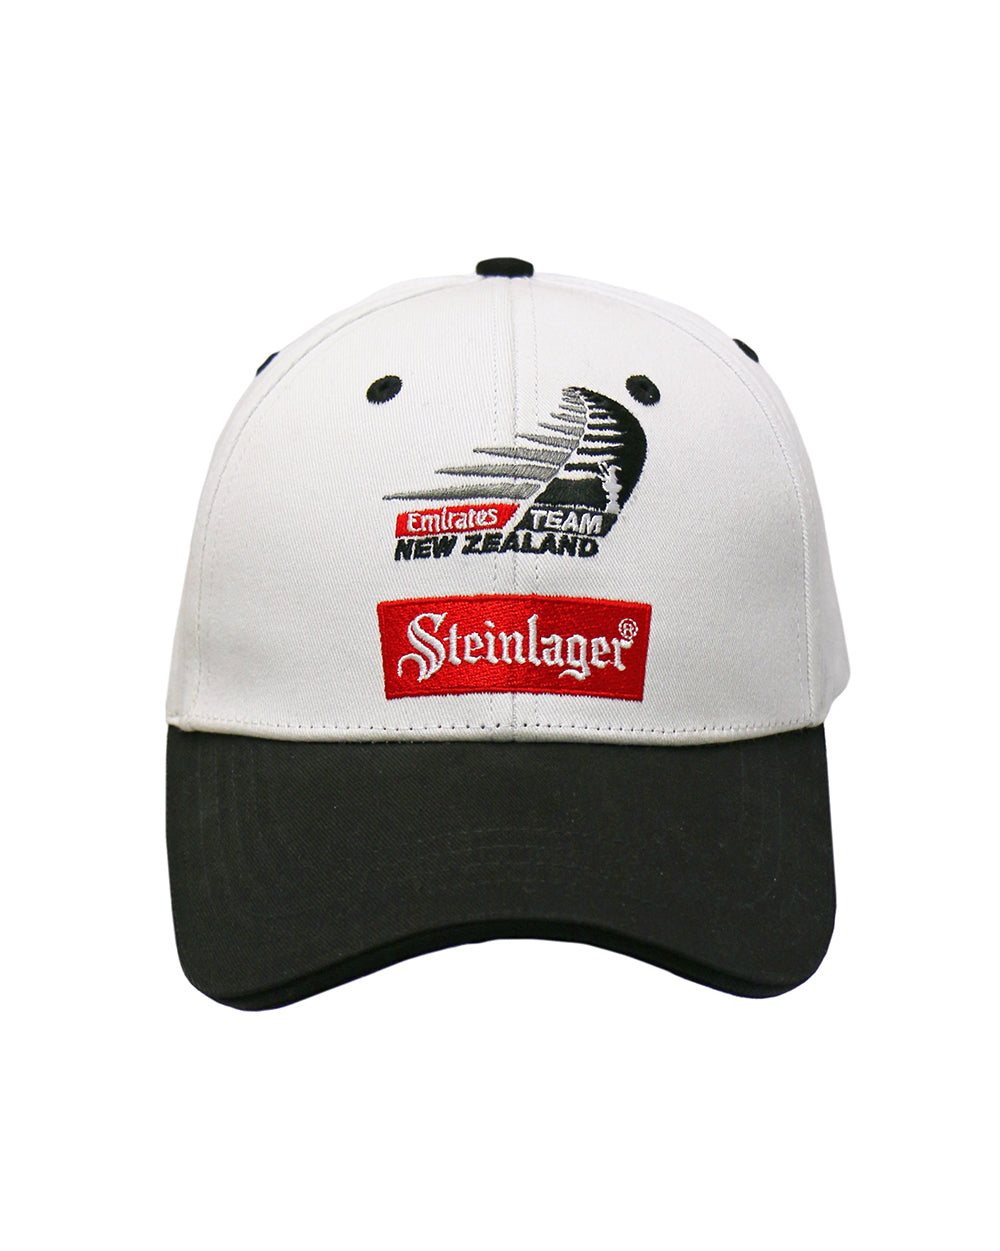 Steinlager ETNZ Cap -  Beer Gear Apparel & Merchandise - Speights - Lion Red - VB - Tokyo Dy merch